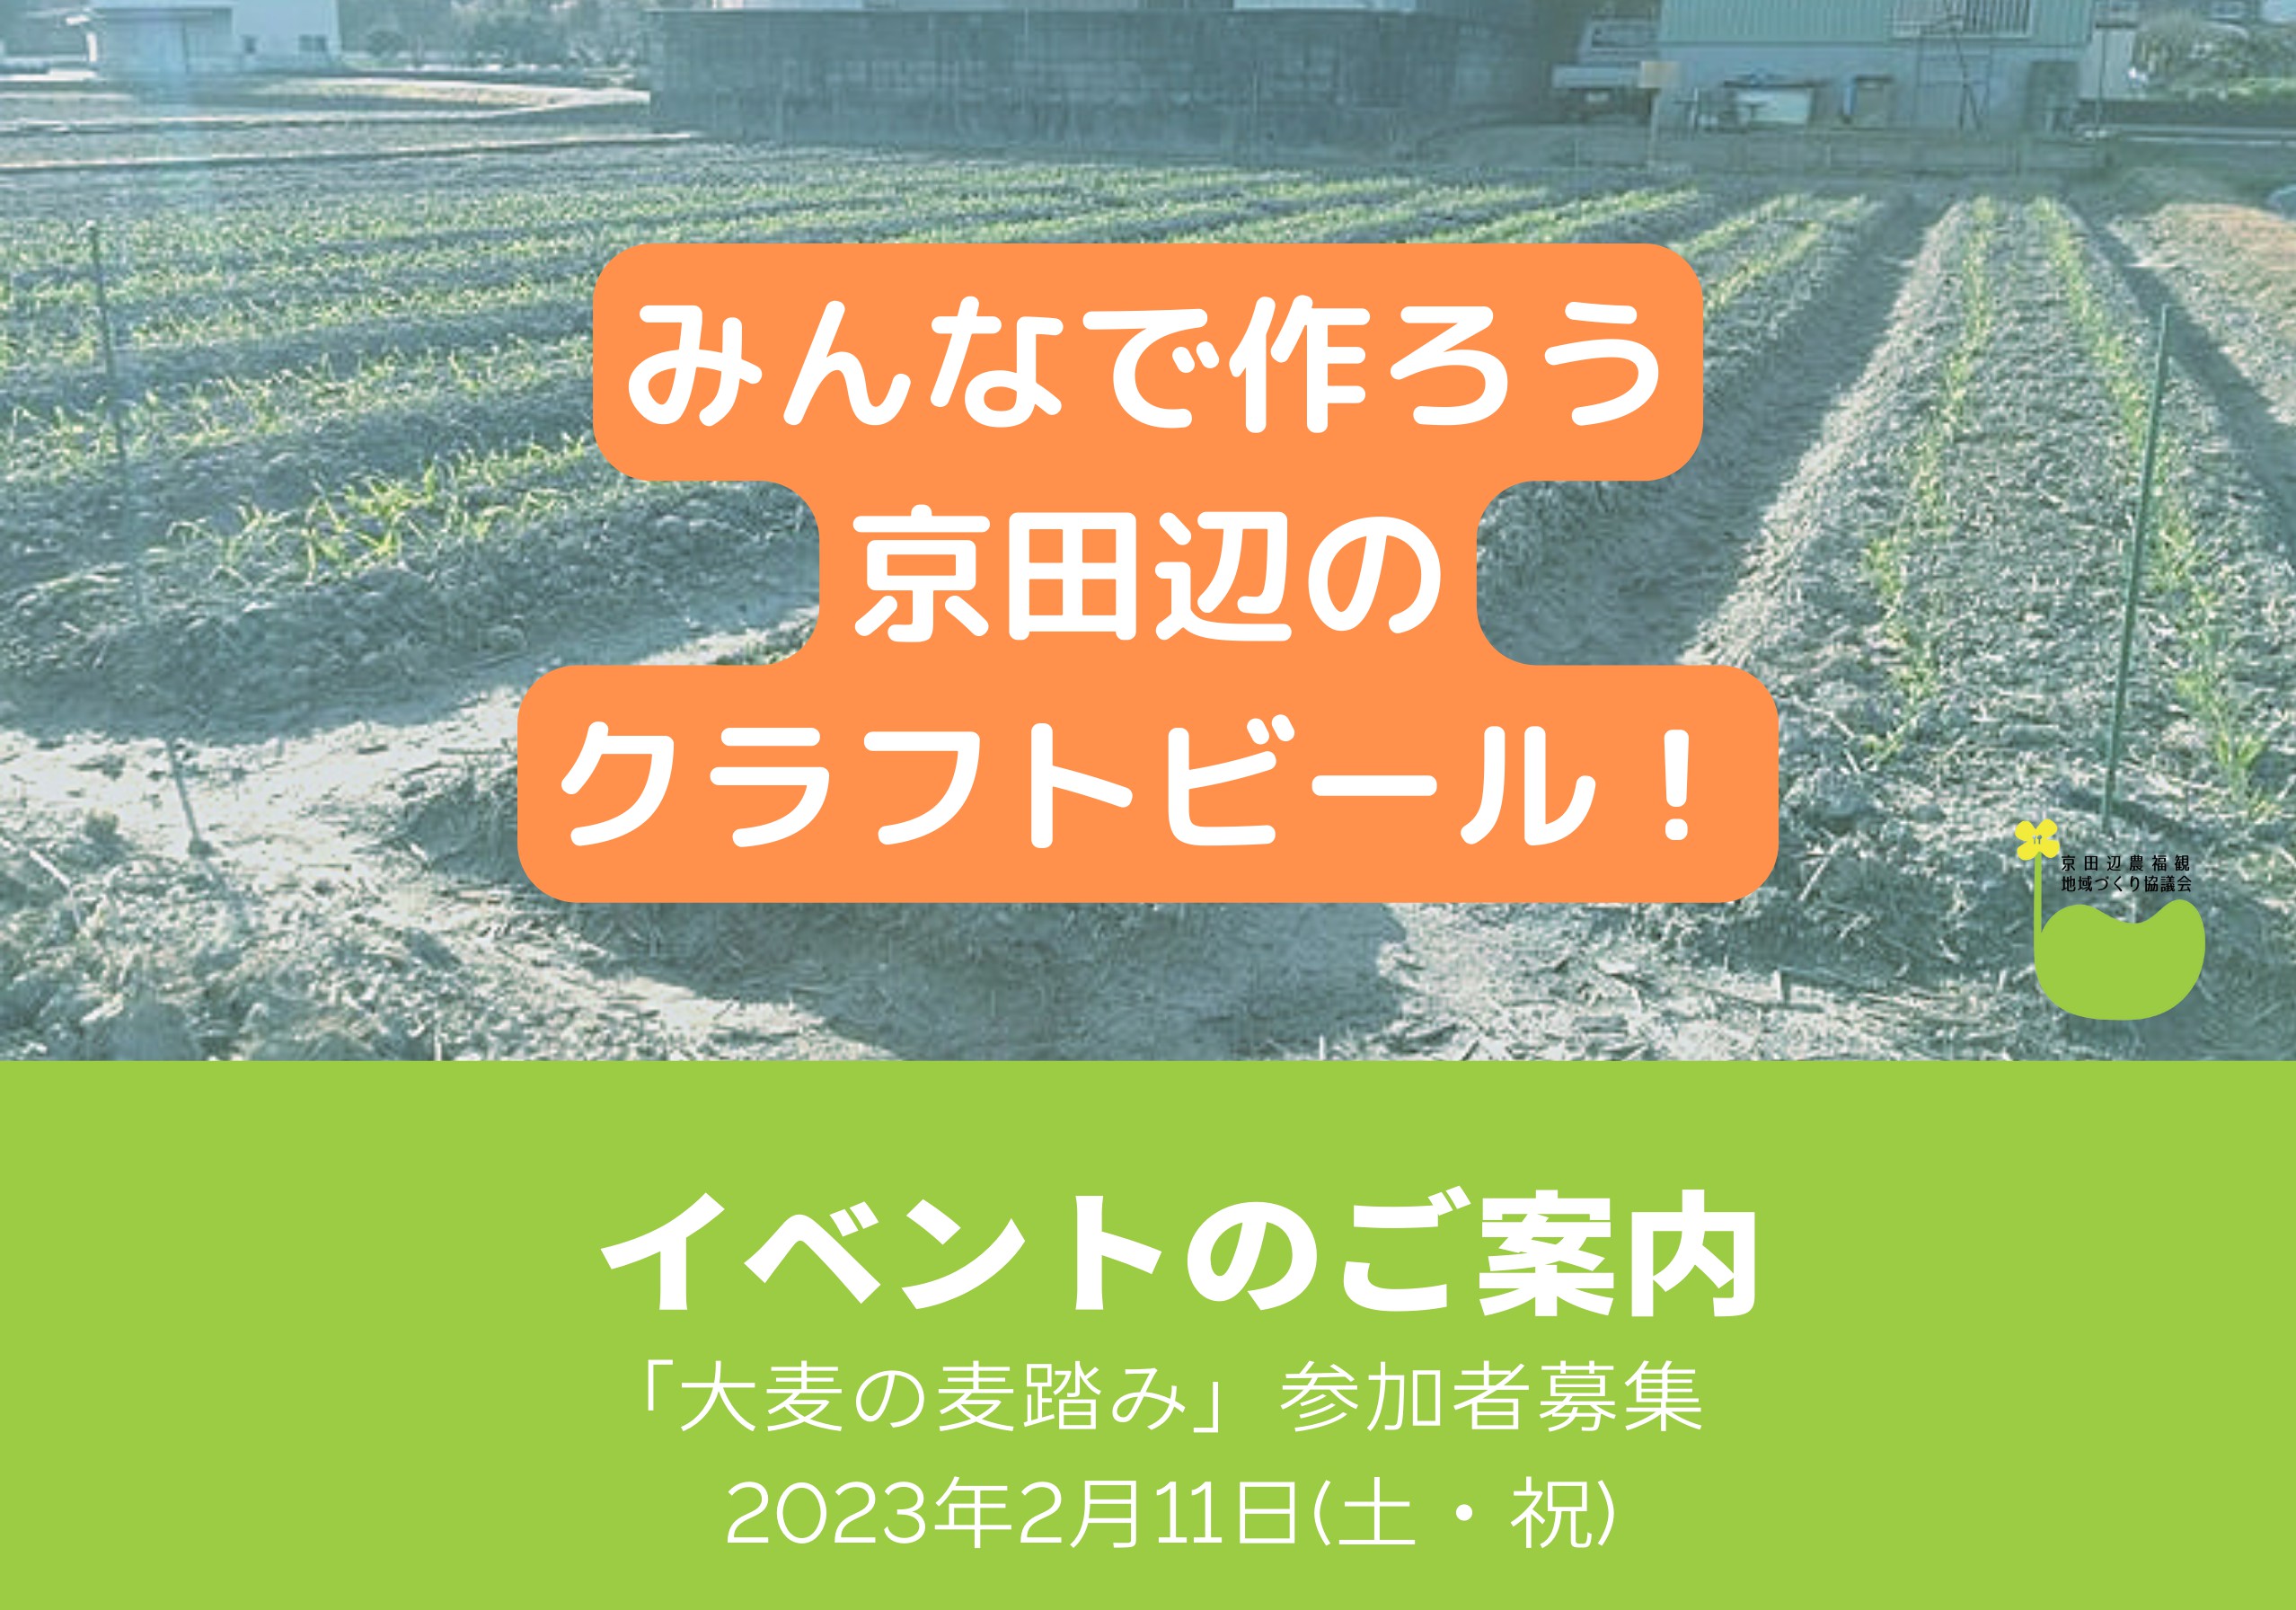 2023年2月11日(土•祝)「大麦麦踏み」イベントのお知らせの画像